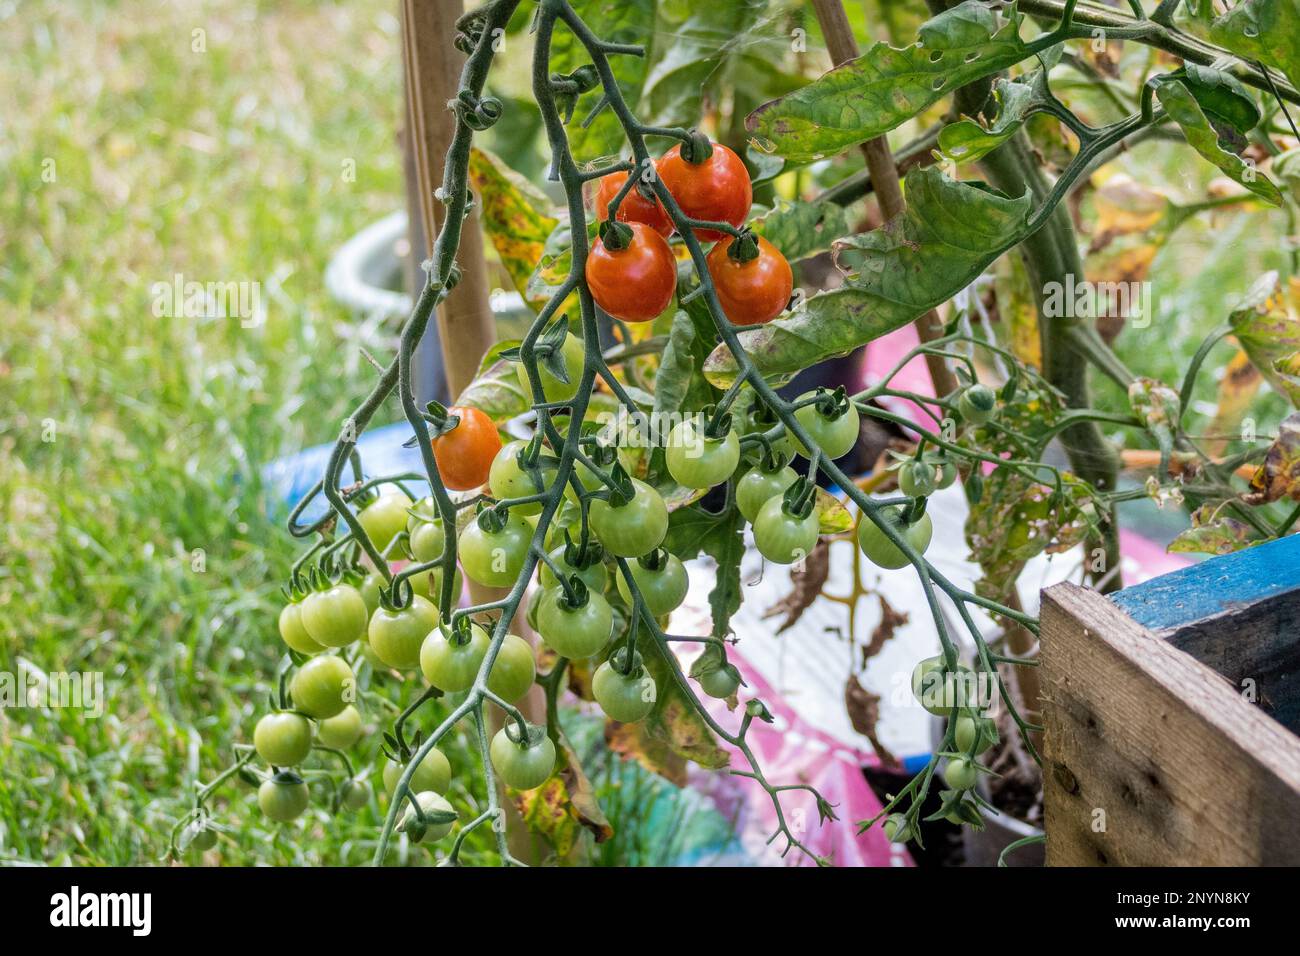 Un capretto di pomodori ciliegini con frutti maturi e non maturi su un vitigno di pomodoro che cresce in un growbag esterno Foto Stock